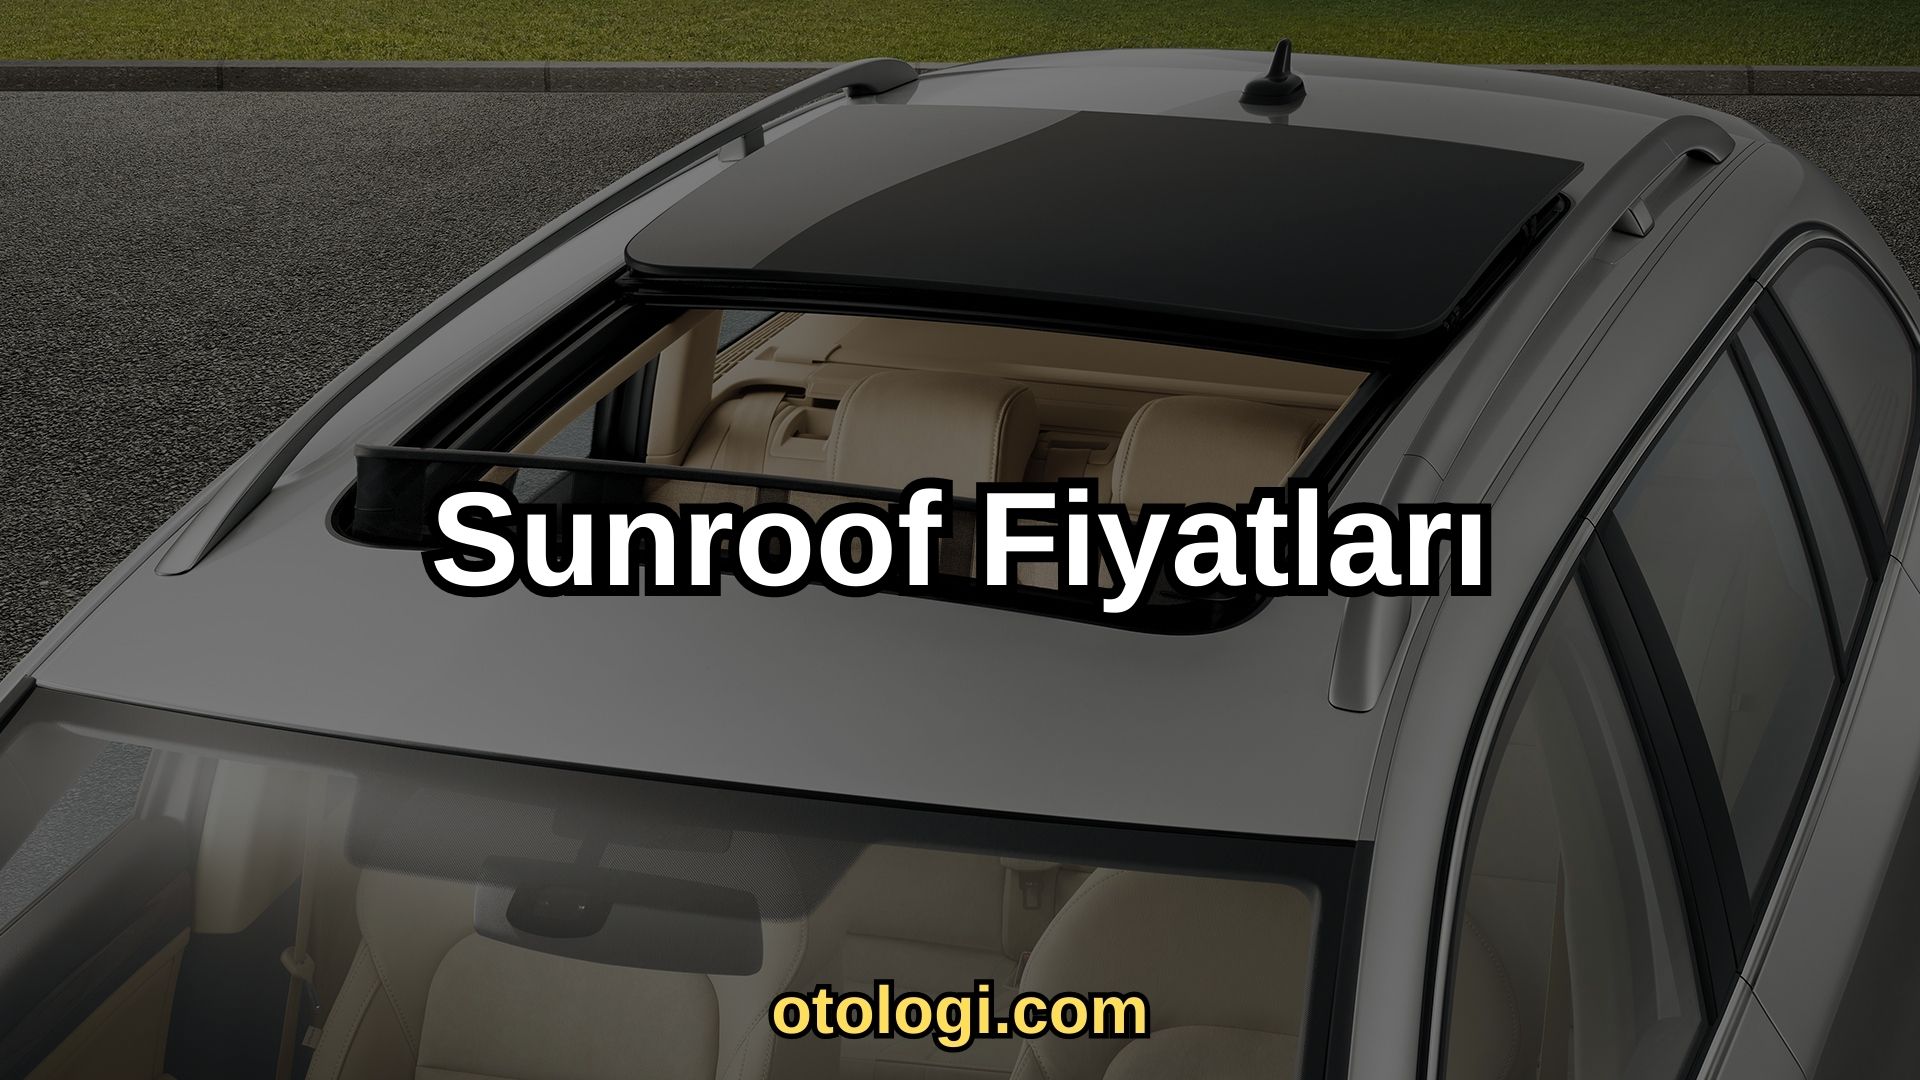 Sunroof Fiyatlari